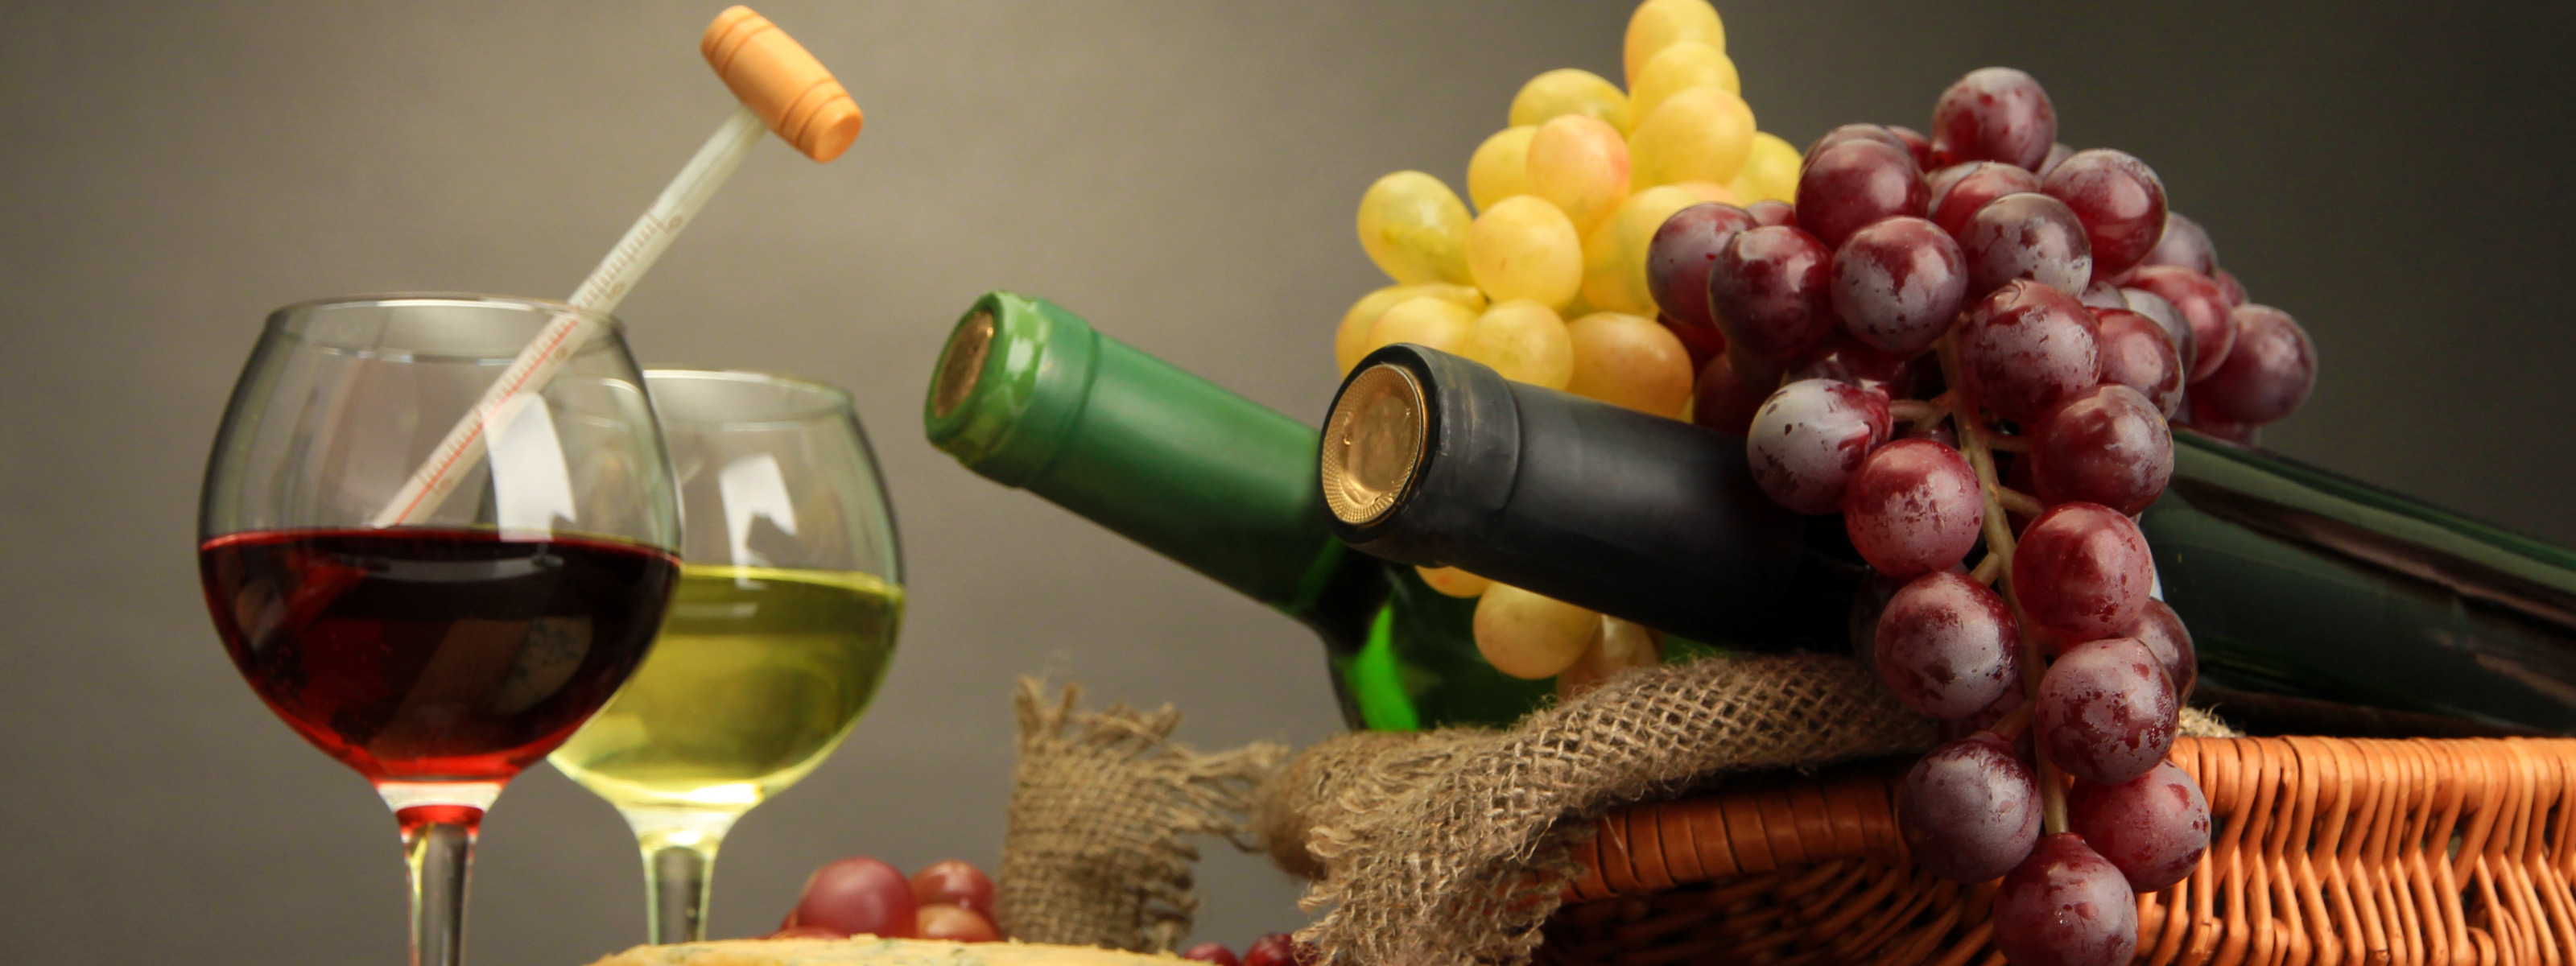 Вино в жизни человека. Вина Португалии. Портвейн.бутылка гроздь винограда. Импортное вино в бутылке в виде виноградной грозди. Виноградная гроздь вино в коробке.